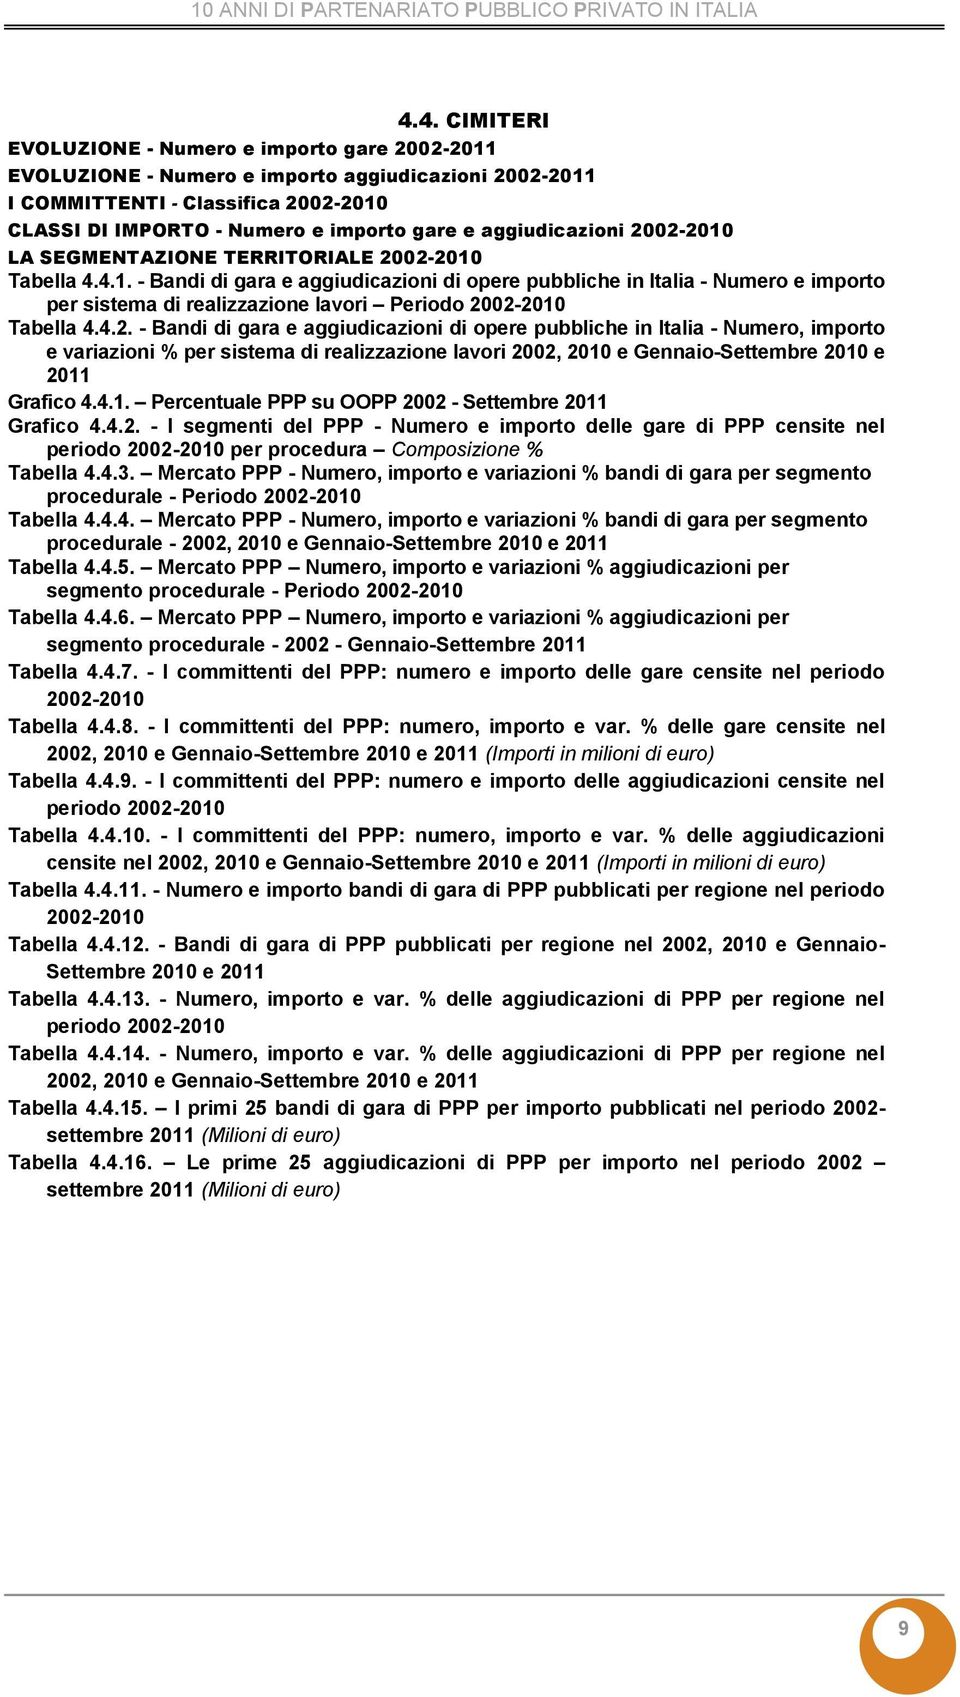 - Bandi di gara e aggiudicazioni di opere pubbliche in Italia - Numero, importo Grafico 4.4.1. Percentuale PPP su OOPP 20